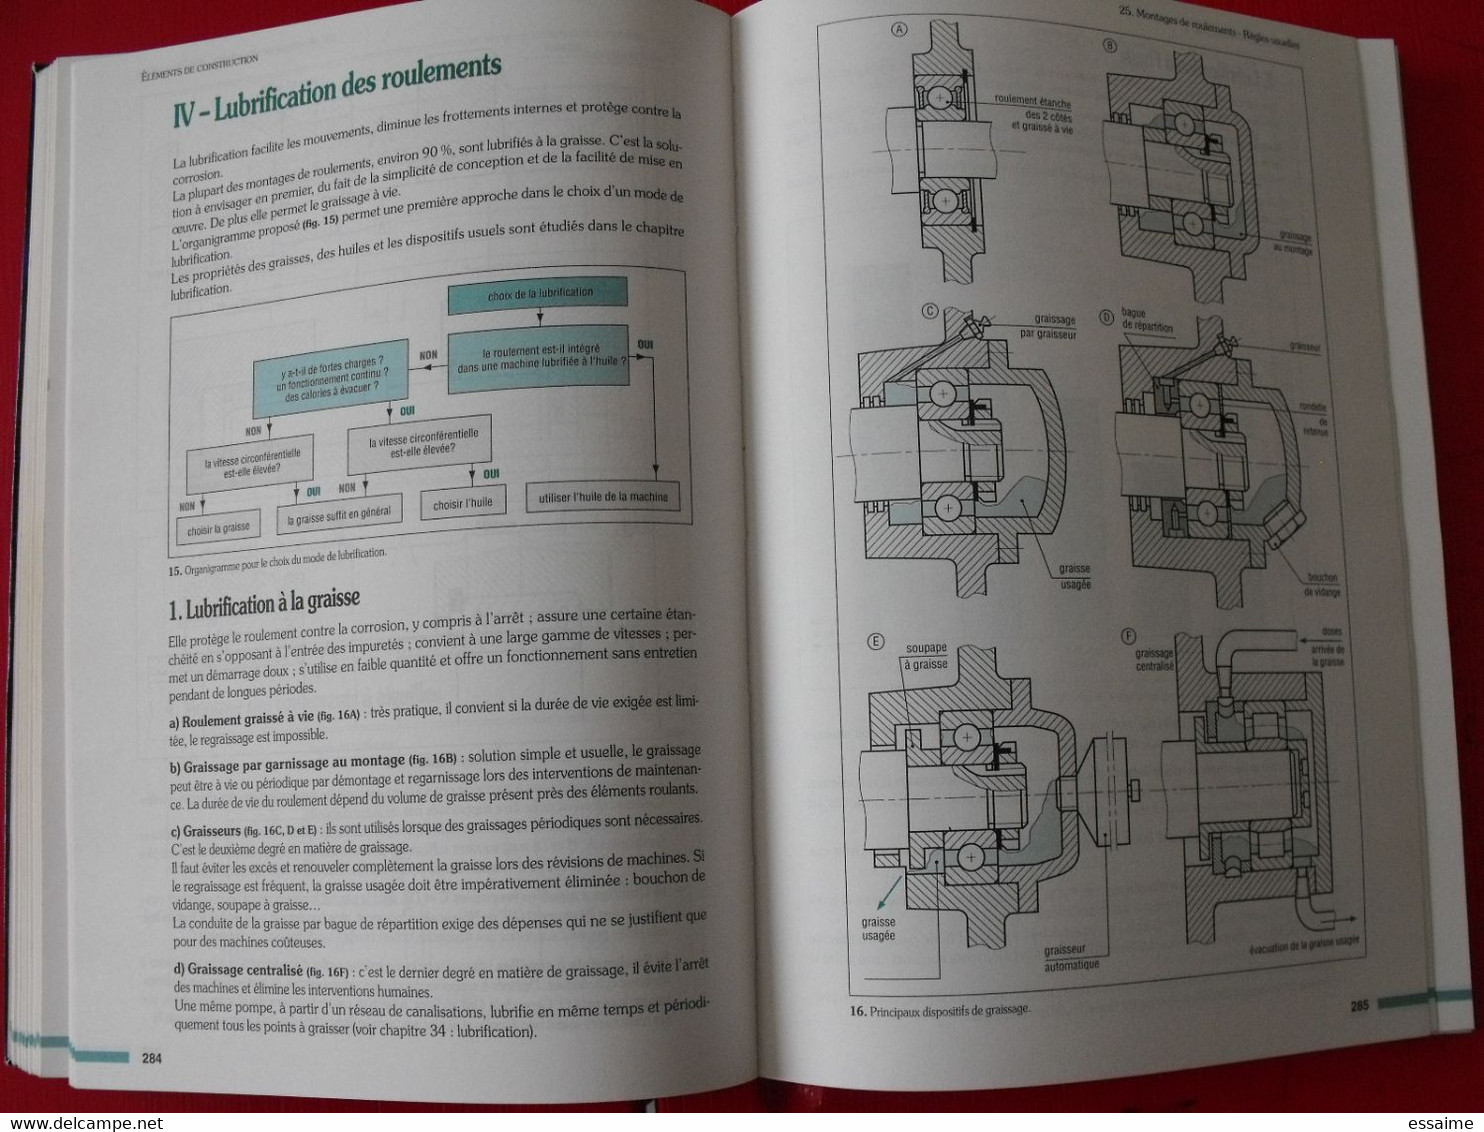 Guide Des Sciences Et Technologies Industrielles. Fanchon Afnor Nathan. 1994. Construction Mécanique Dessin Automatisme - 18 Ans Et Plus